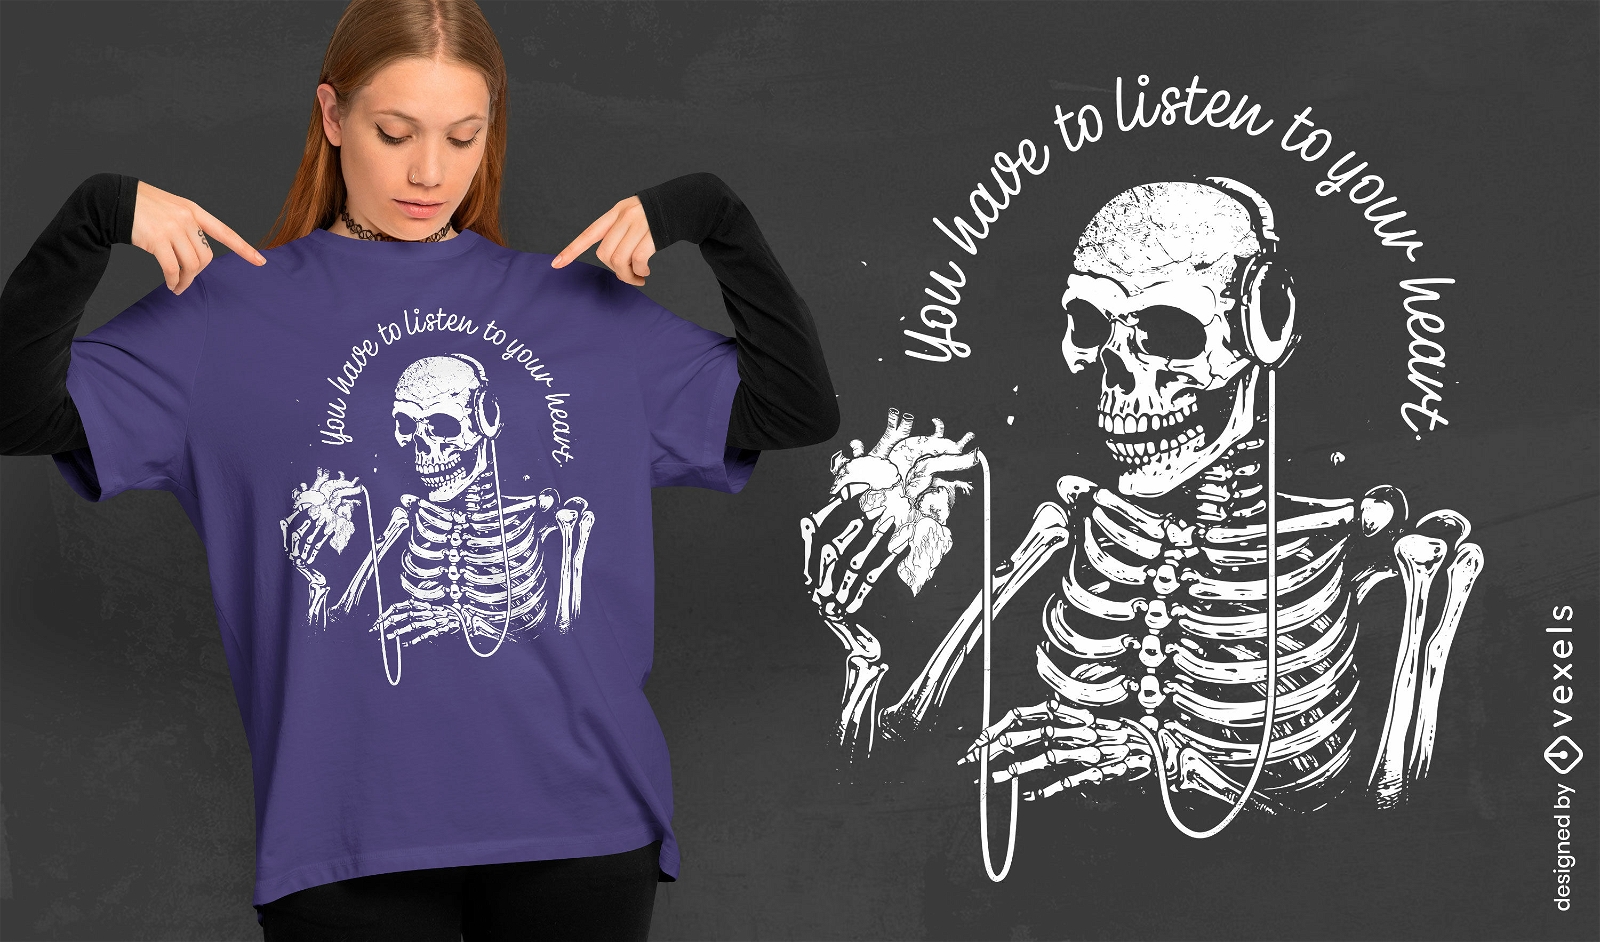 Skeleton listening to heart t-shirt design